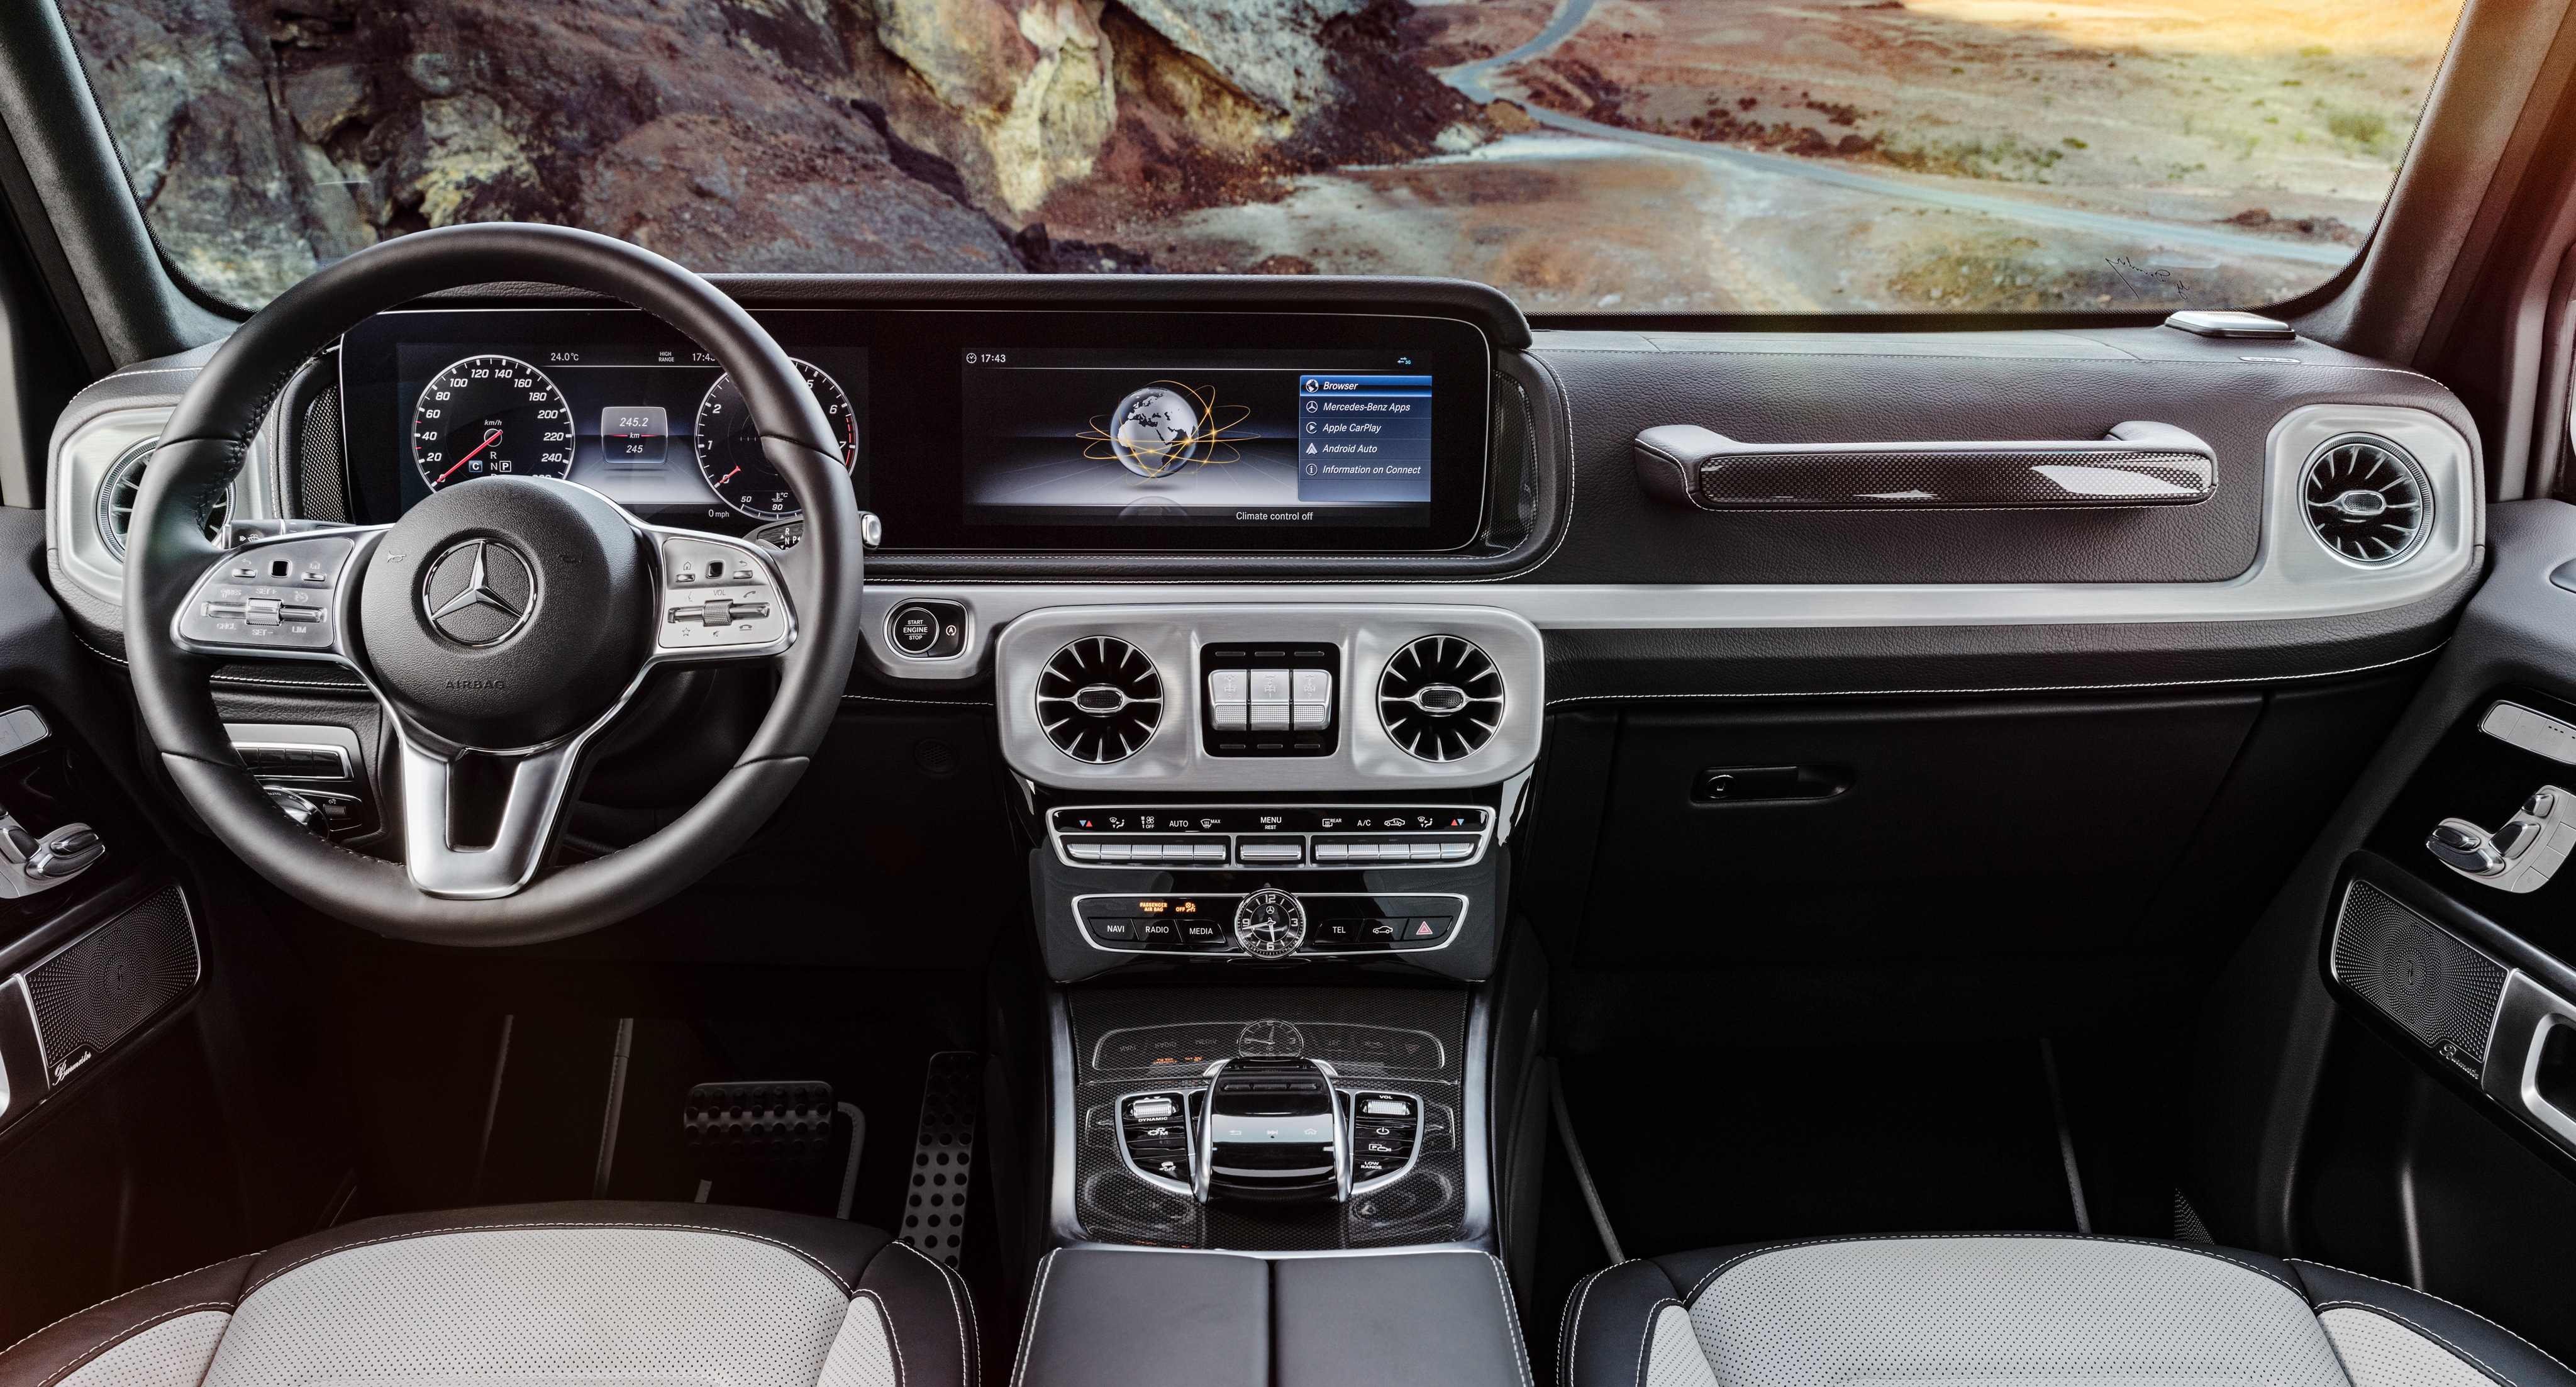 2019 Mercedes G Class Interior - 2018 G Class Interior , HD Wallpaper & Backgrounds